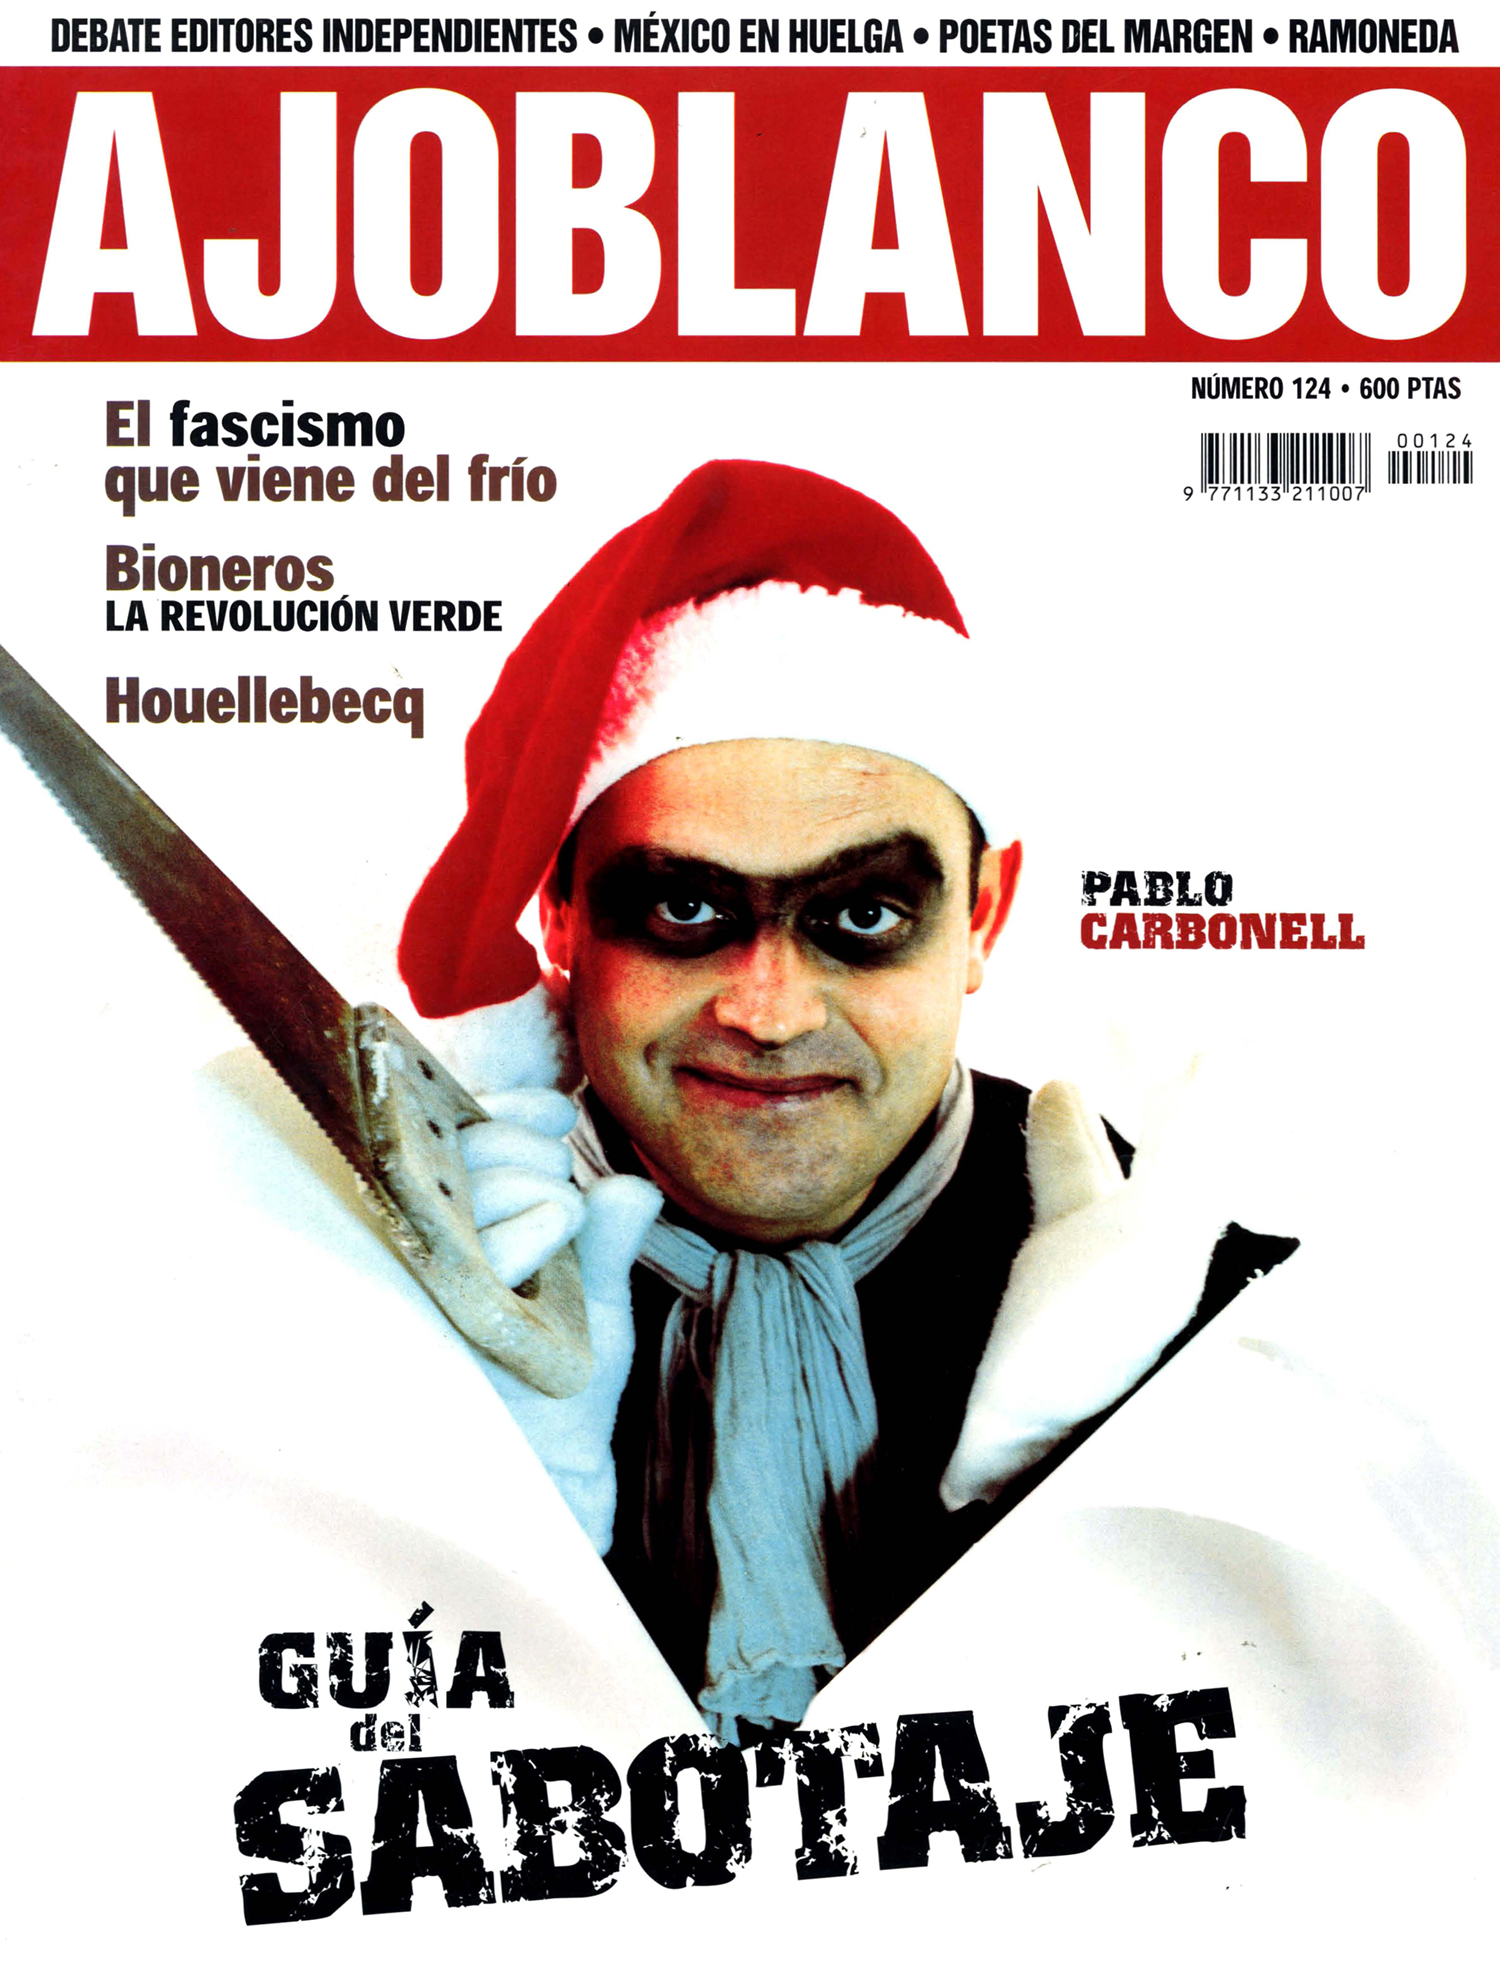 Segundo Ajoblanco 1987 - 1999 â€¢ Pepe Ribas